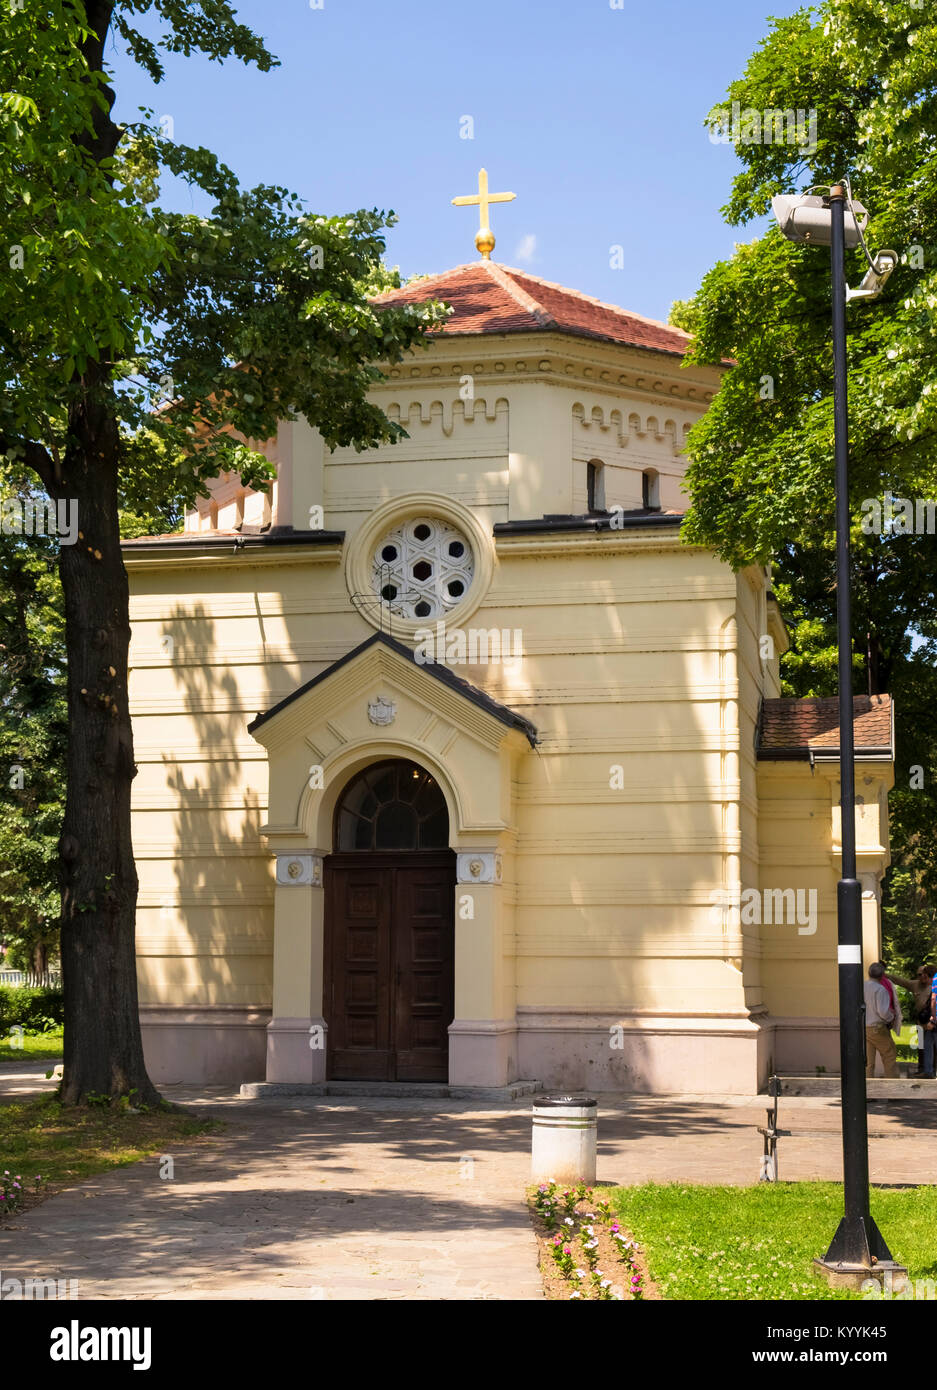 Schädel Tower, Cele Kula, auf Nis in Serbien - ein Denkmal für die Serben, die von den Türken in den ersten Volksaufstand im Jahre 1809 getötet wurden. Stockfoto